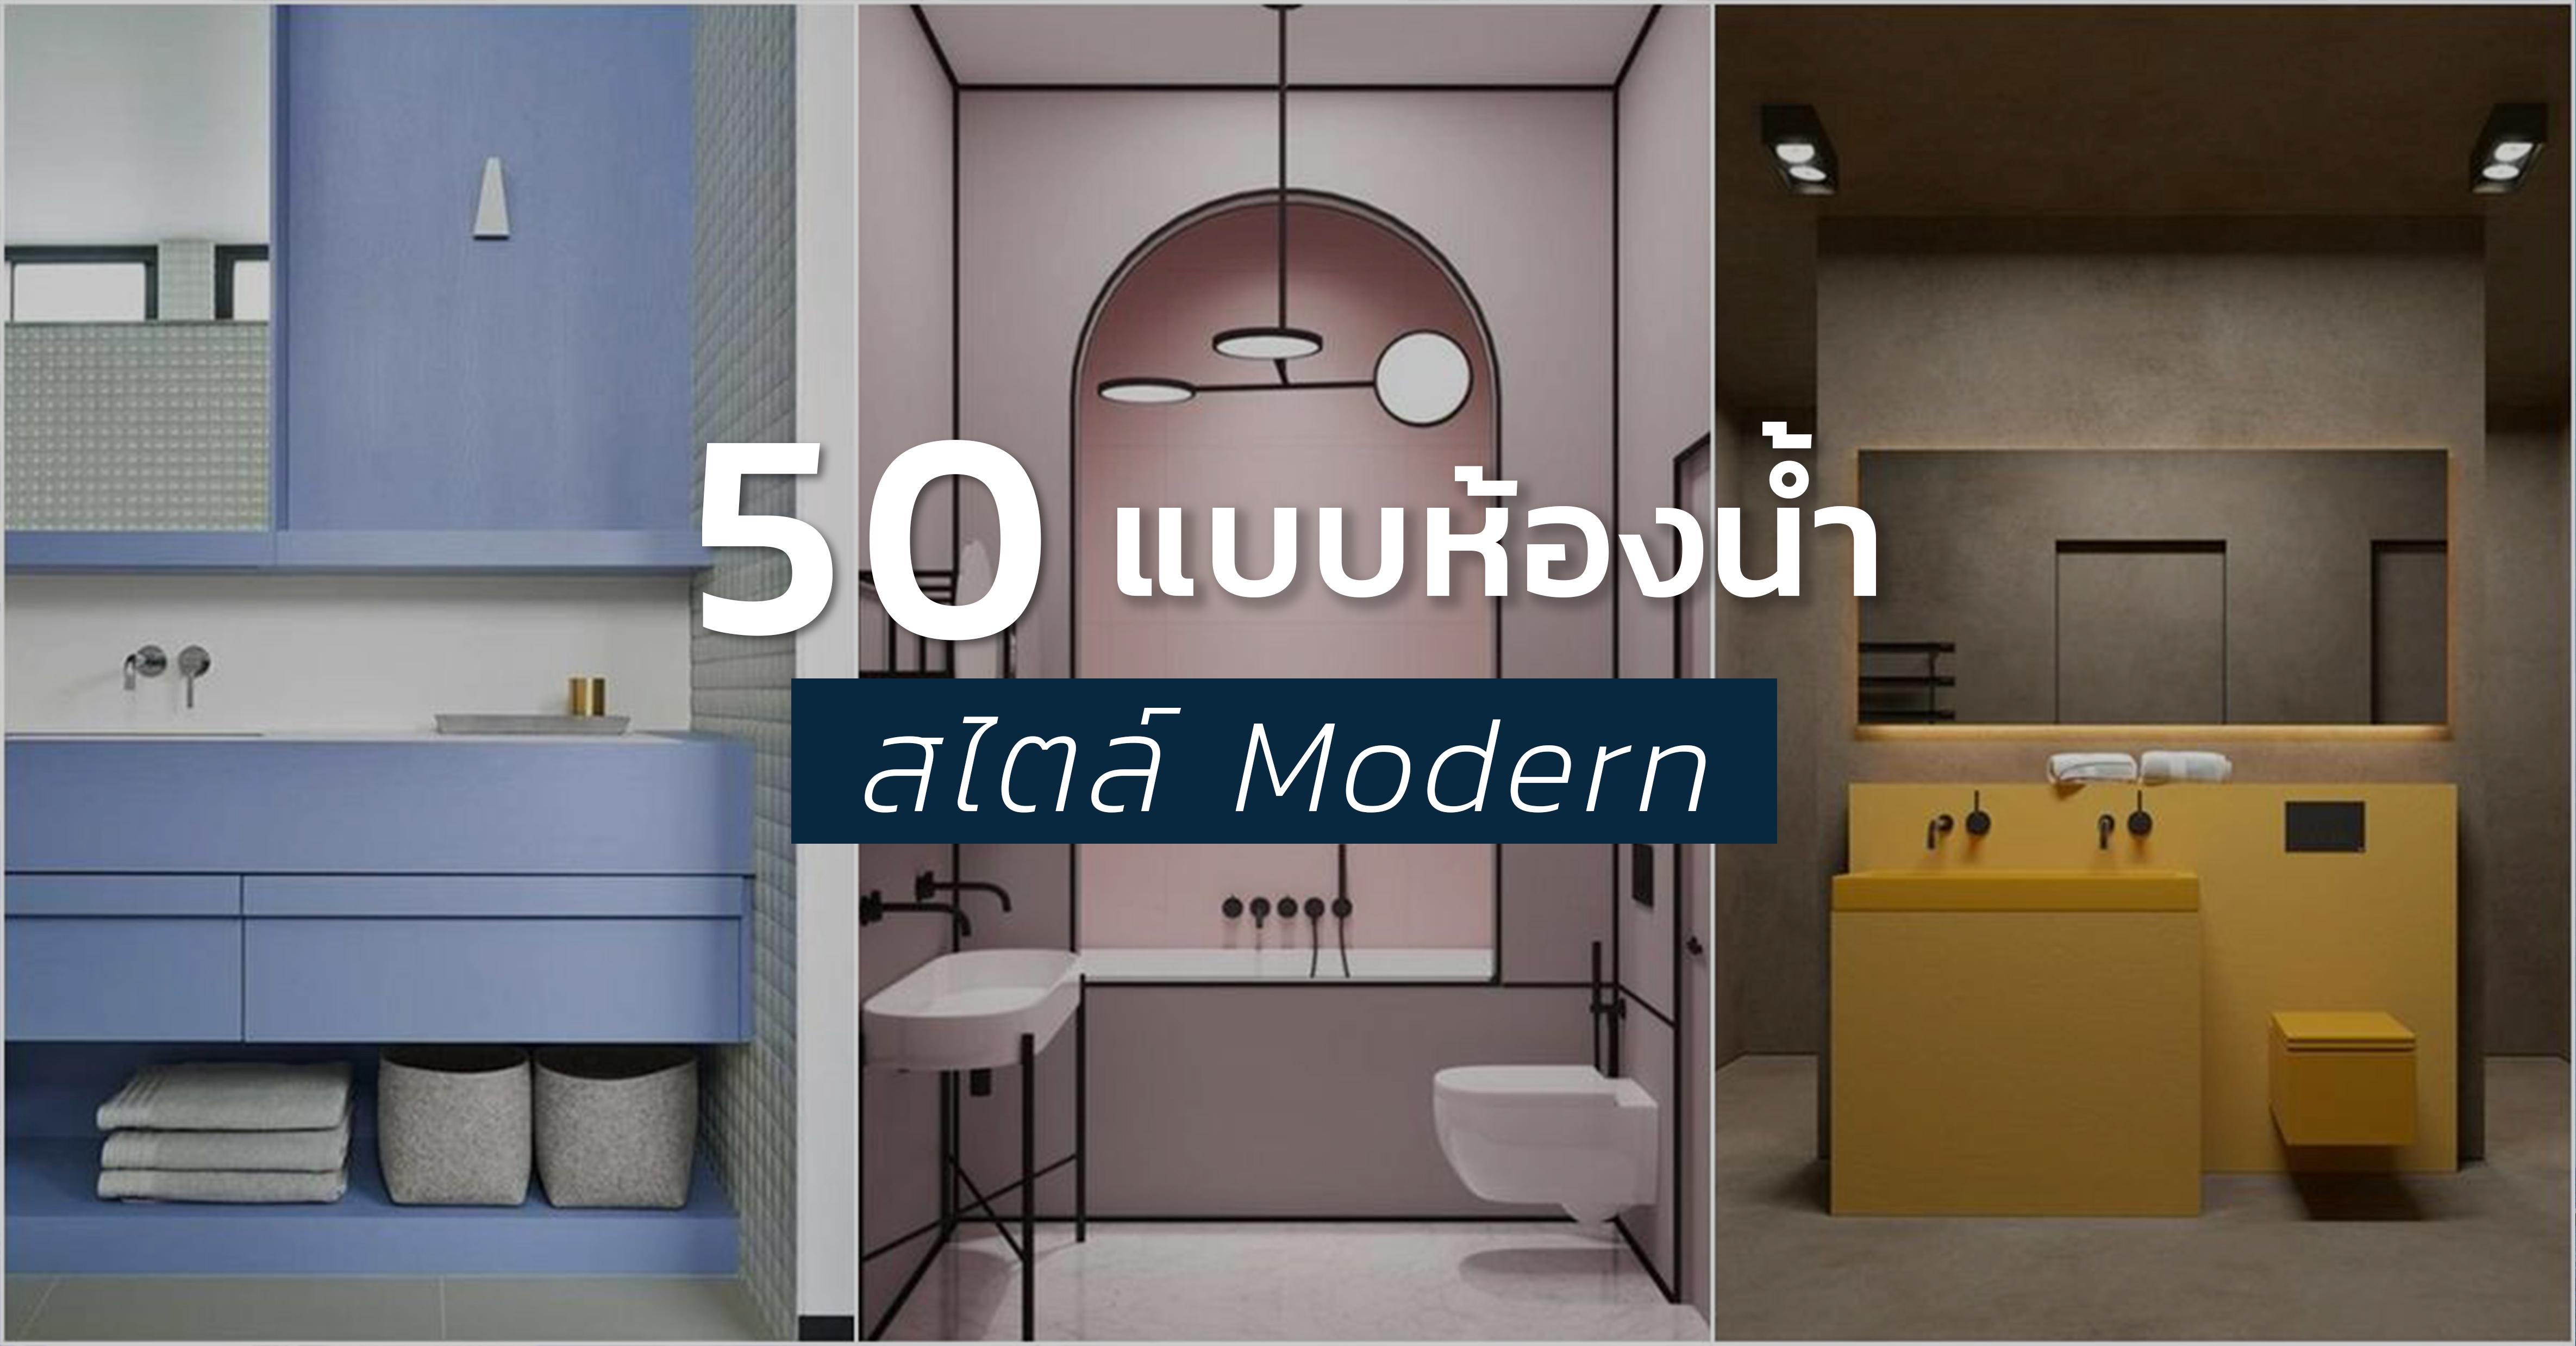 รูปบทความ รวมแบบห้องน้ำ Modern 50 แบบให้แรงบันดาลใจคุณได้หลากสีสัน ตามใจคุณ